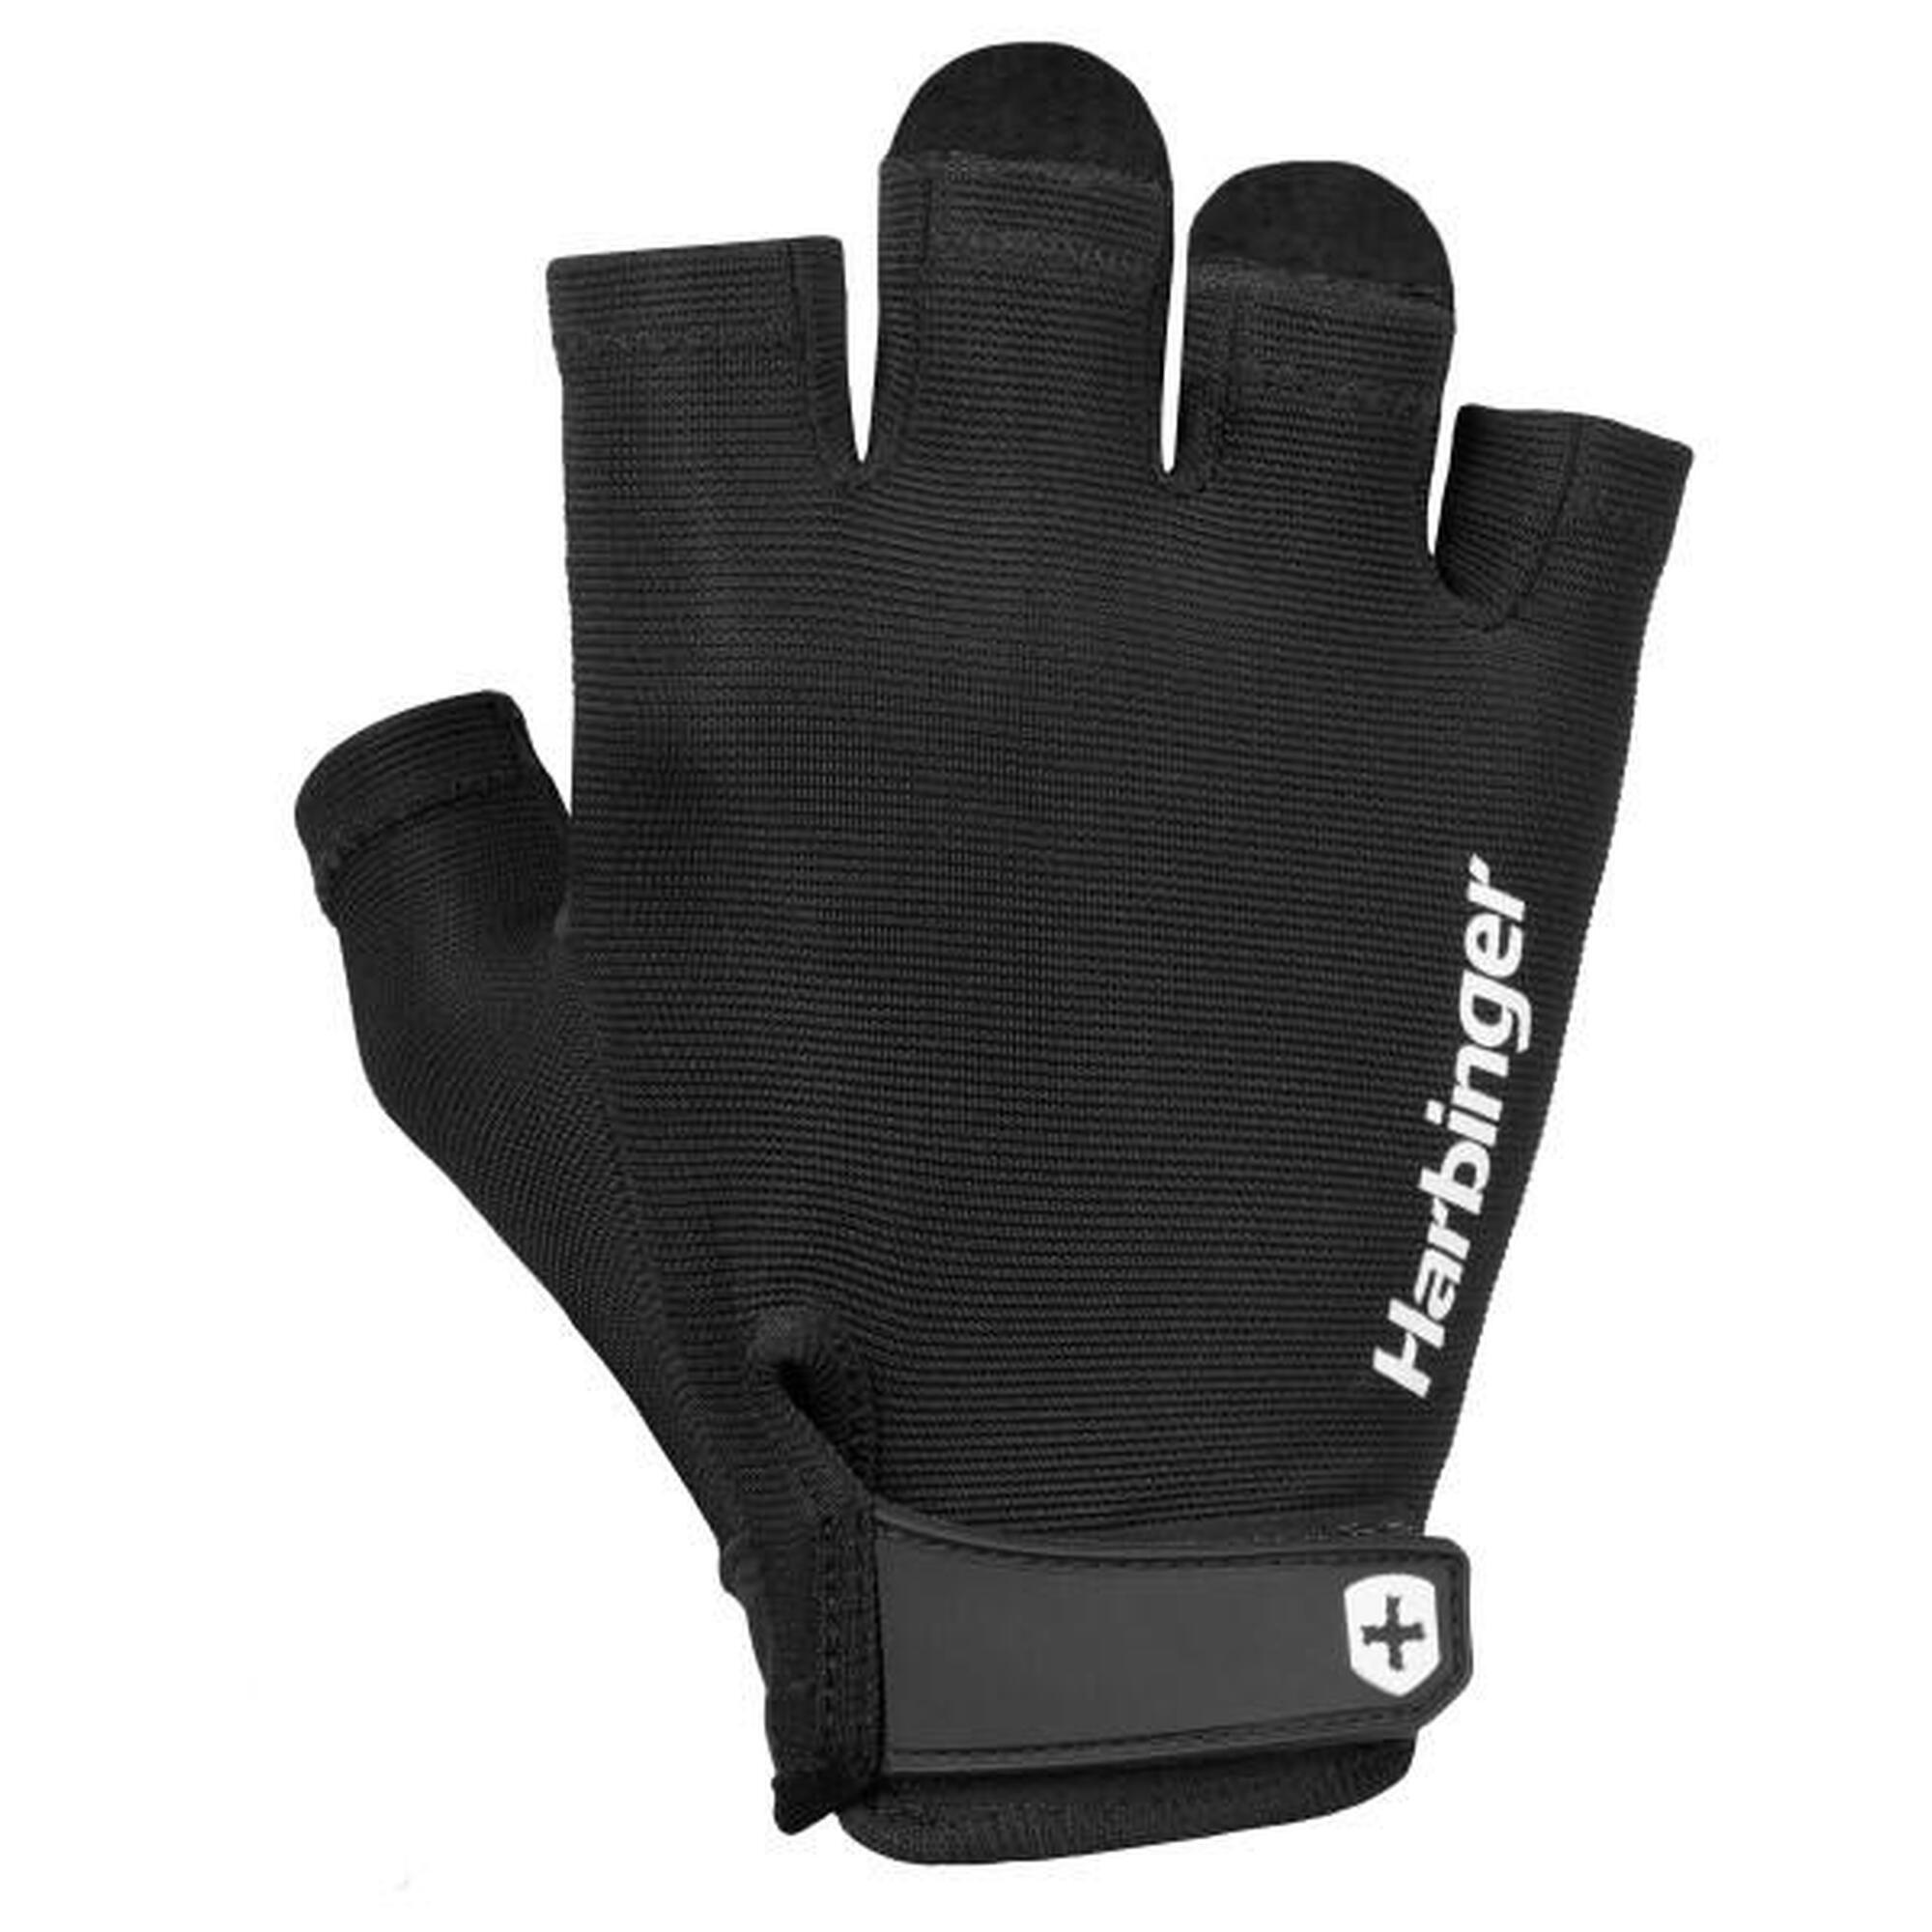 Harbinger Power Gloves : adhérence ferme, soutien et confort avec paume en cuir